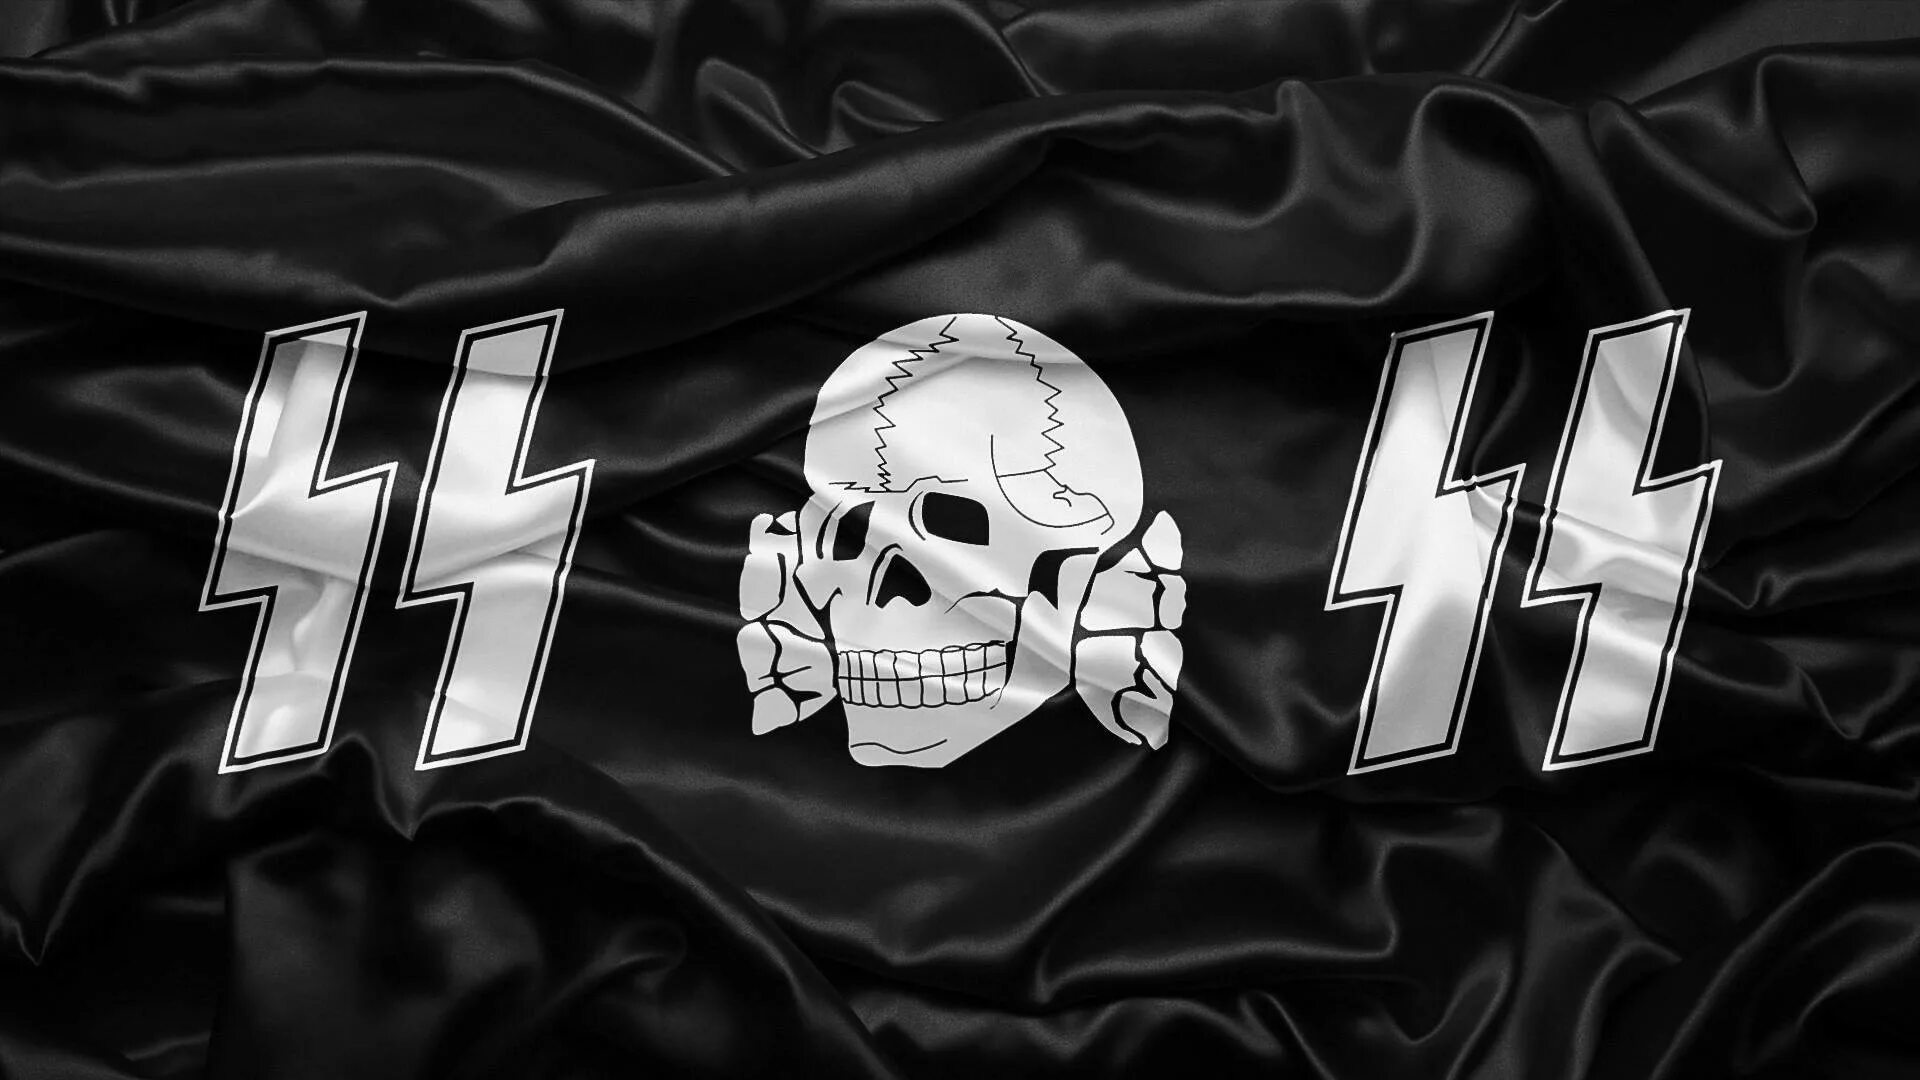 Ц сс. Waffen SS символика. Флаги 3 рейха и СС. Мертвая голова Тотенкопф. Флаг Ваффен СС.